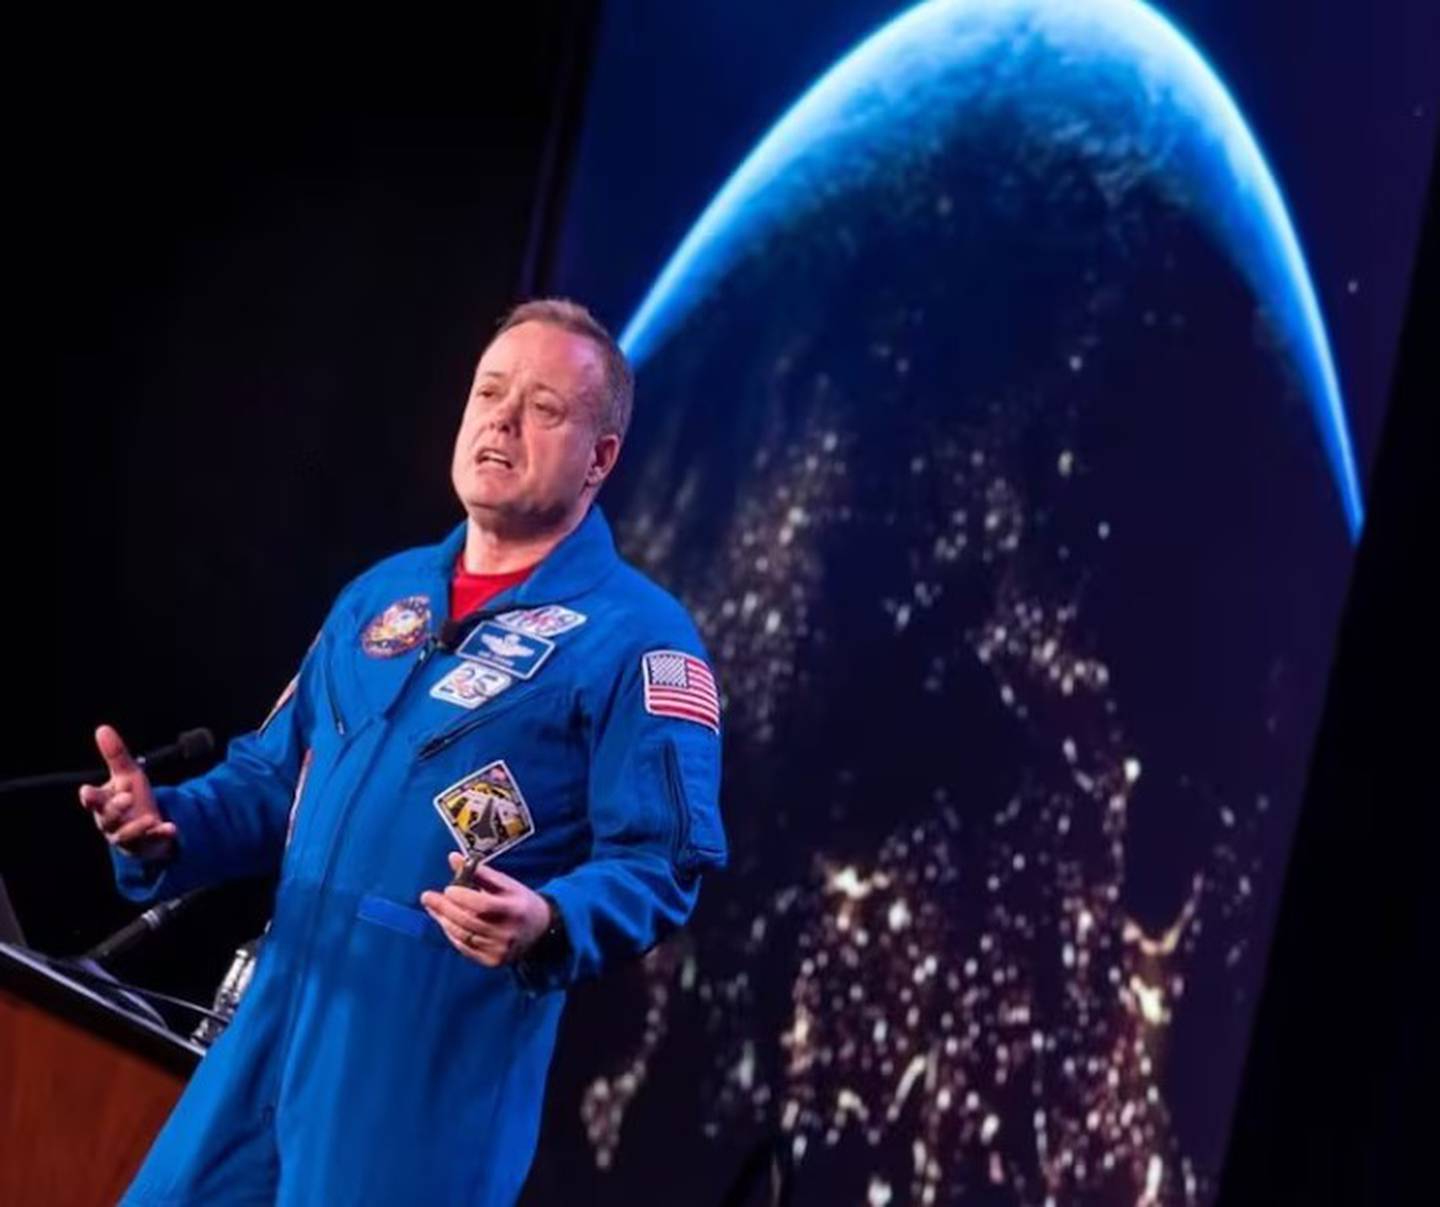 Ronald Garan estuvo en el espacio exterior y ahora cuenta su experiencia a través de charlas.